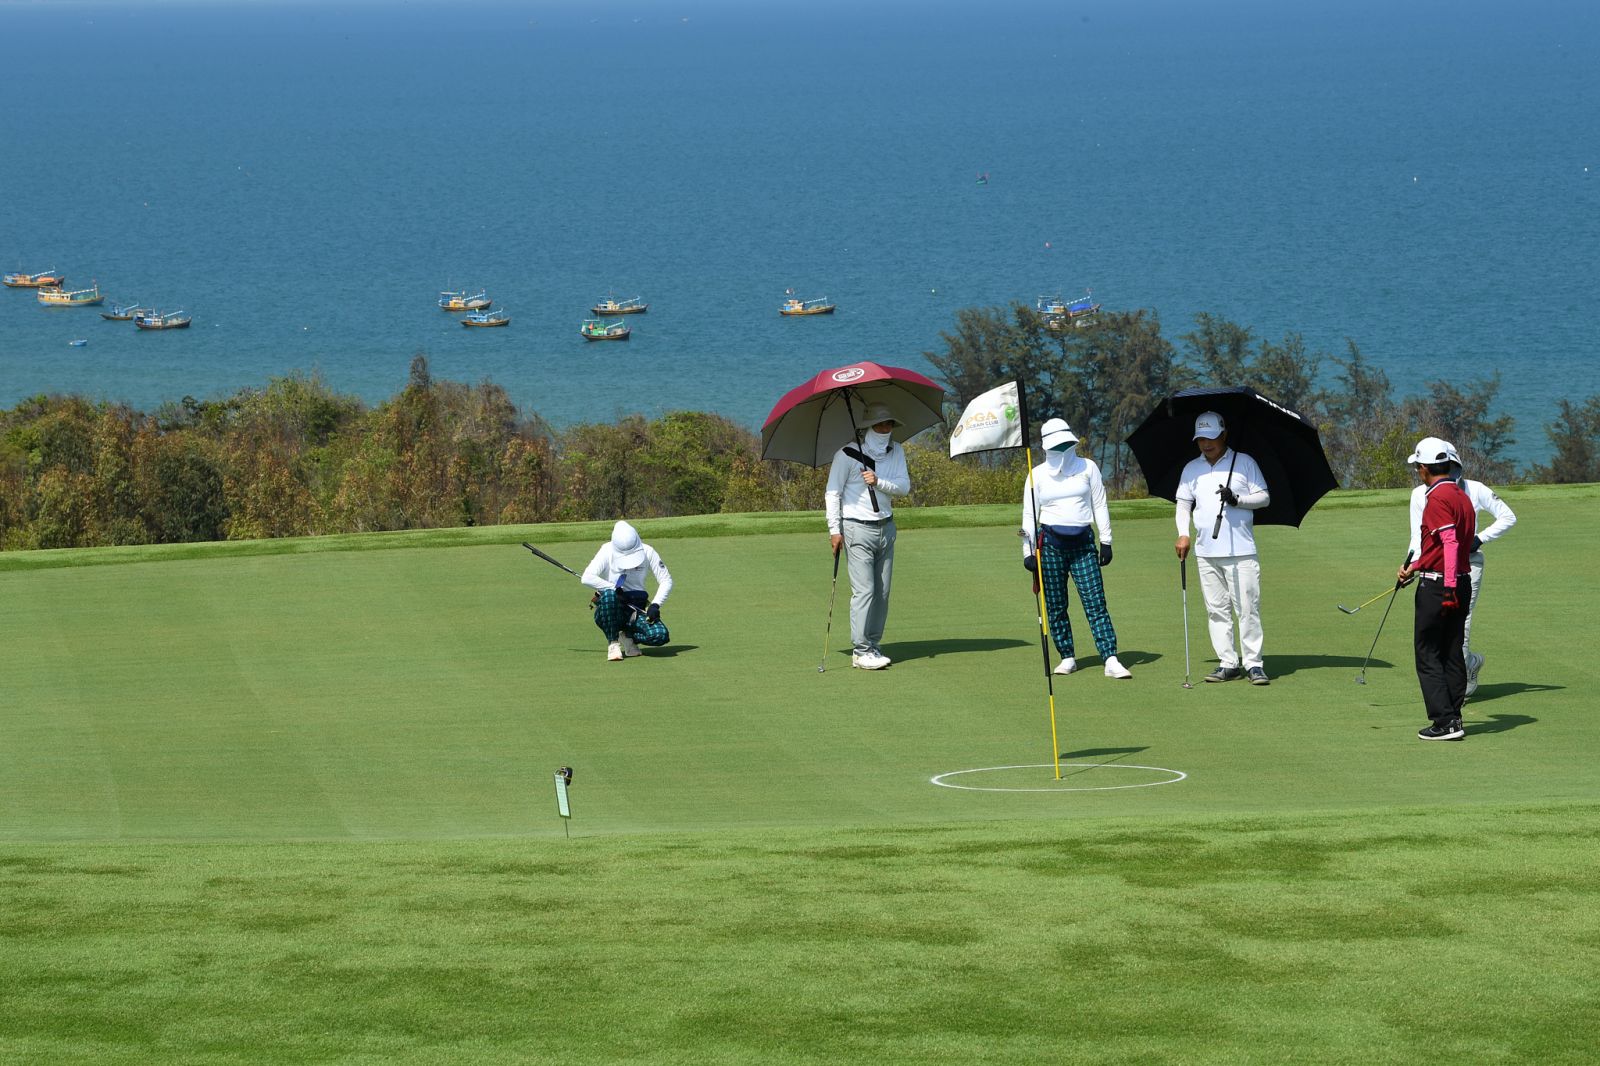 Cụm sân golf PGA độc quyền sẽ là yếu tố thúc đẩy ngành du lịch golf và thể thao golf. (Ảnh thực tế sân PGA Garden tại NovaWorld Phan Thiet)